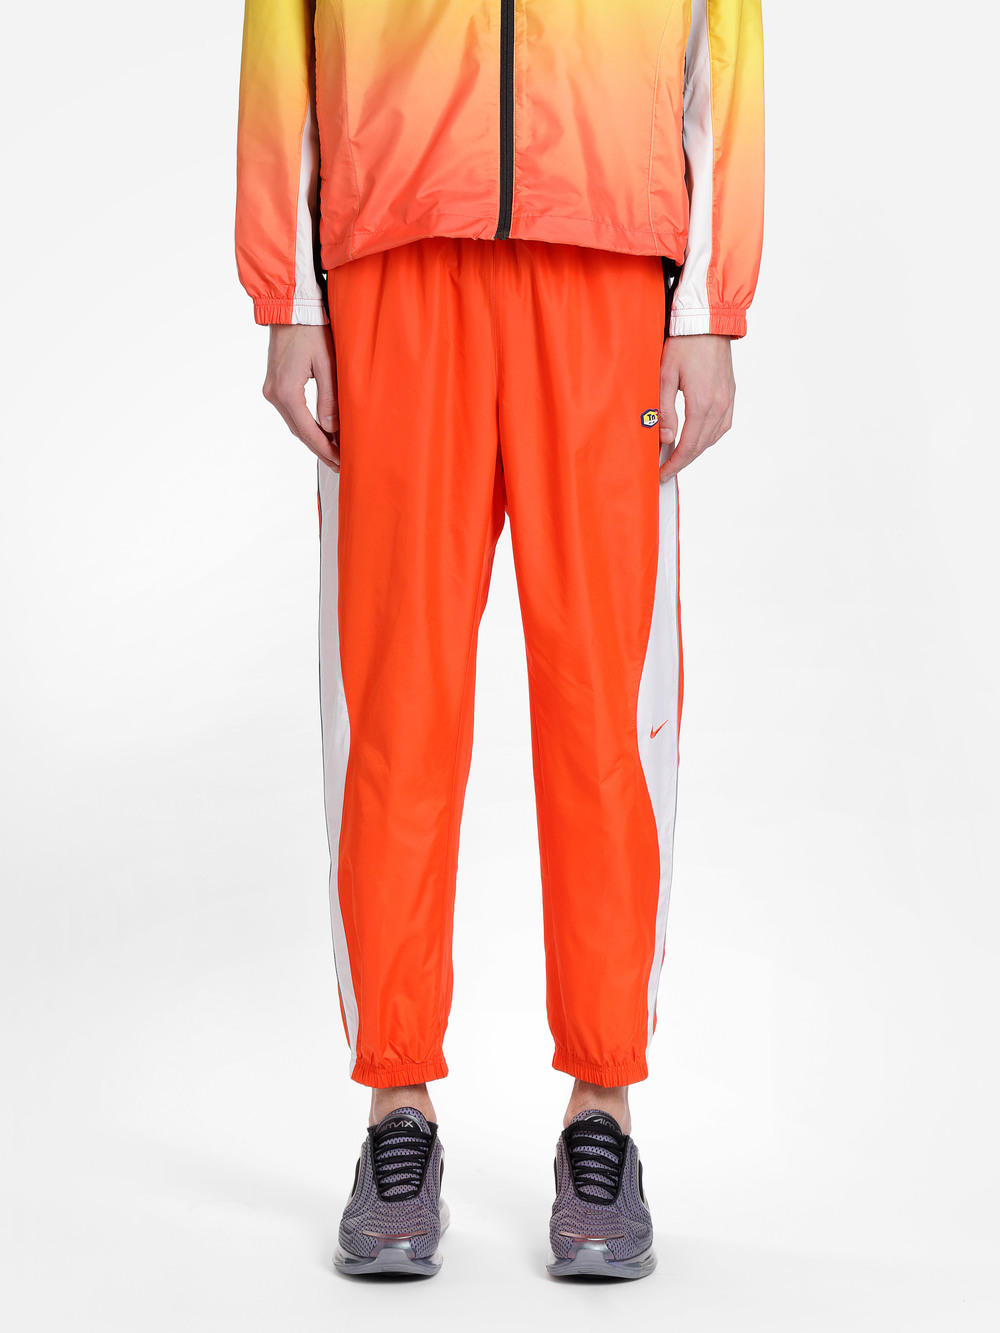 orange nike jumpsuit